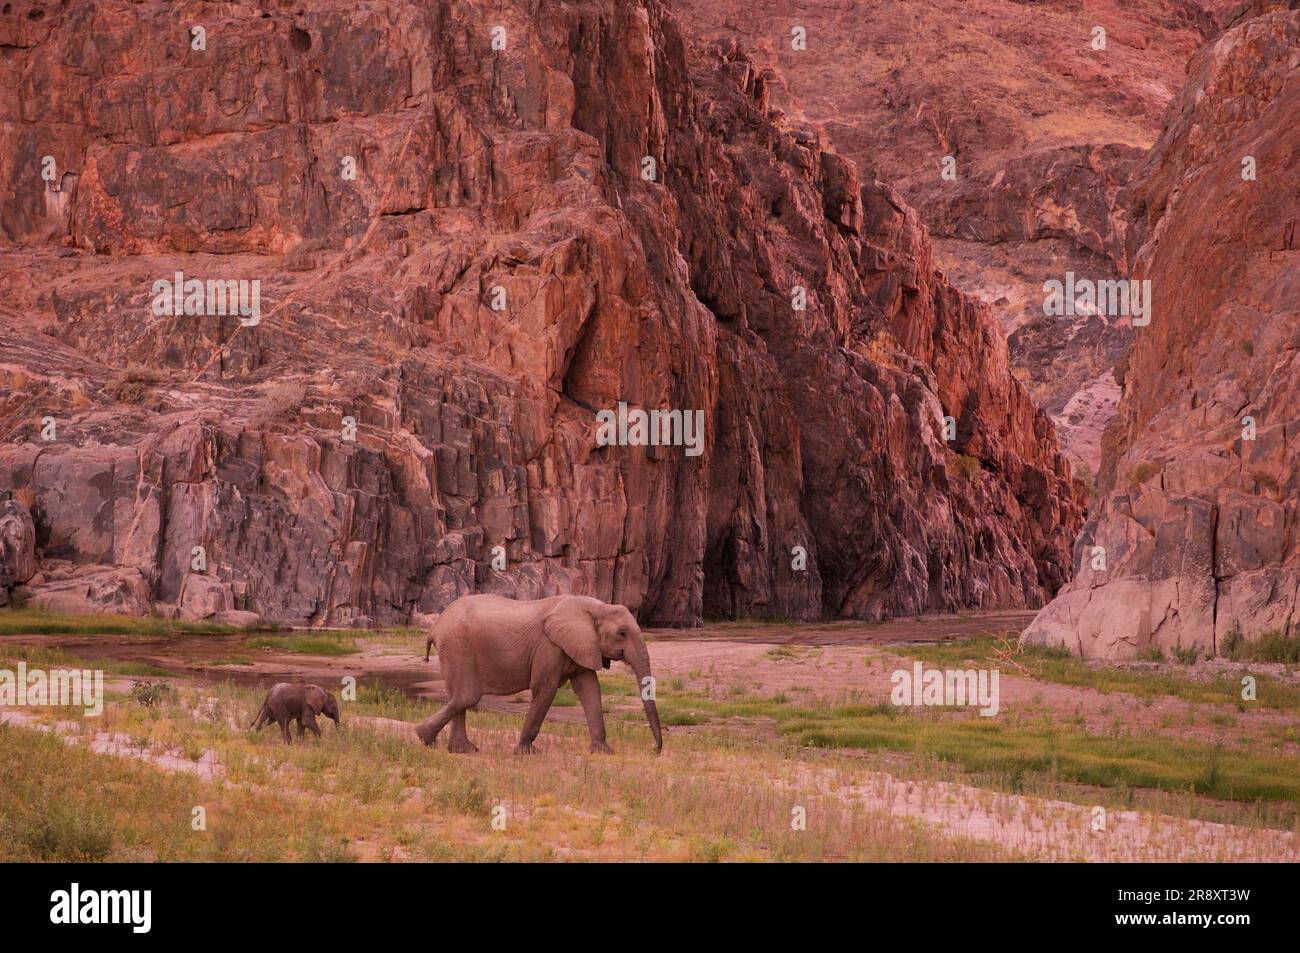 Elefante (Loxodonta africana), campamento de la costa de esqueletos, safaris salvajes, río Hoarusib cerca de Purros, Kaokoland, región de Kunene, Namibia Foto de stock